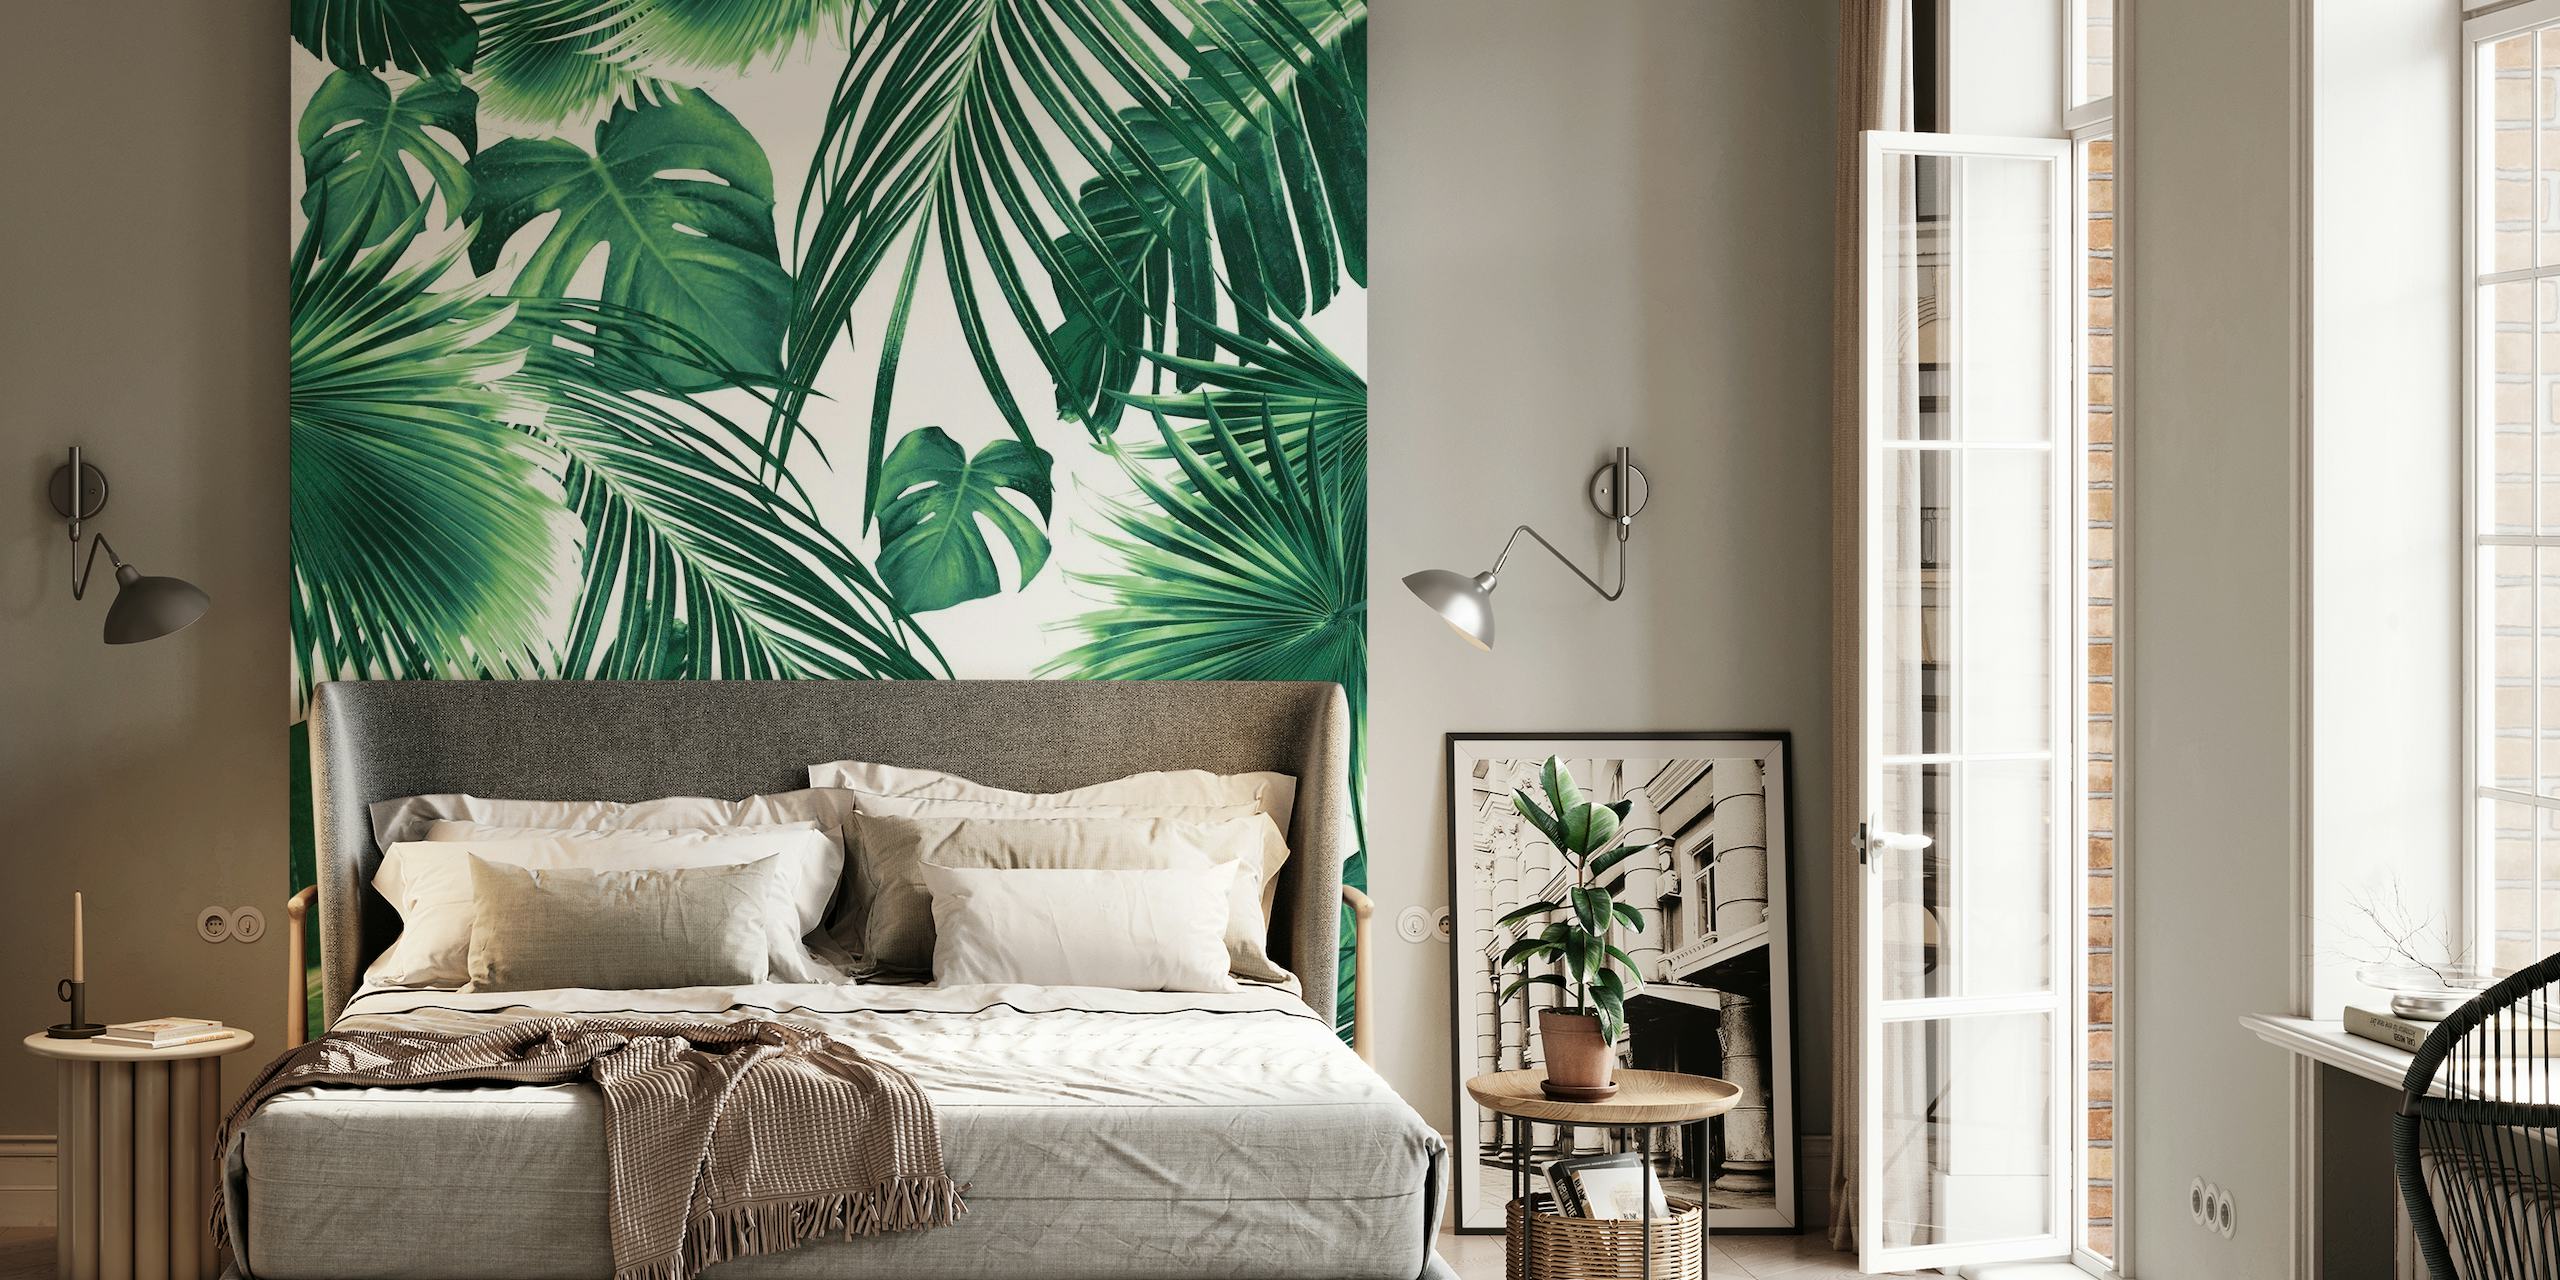 Een weelderig fotobehang met een dicht patroon van tropische junglebladeren in groentinten